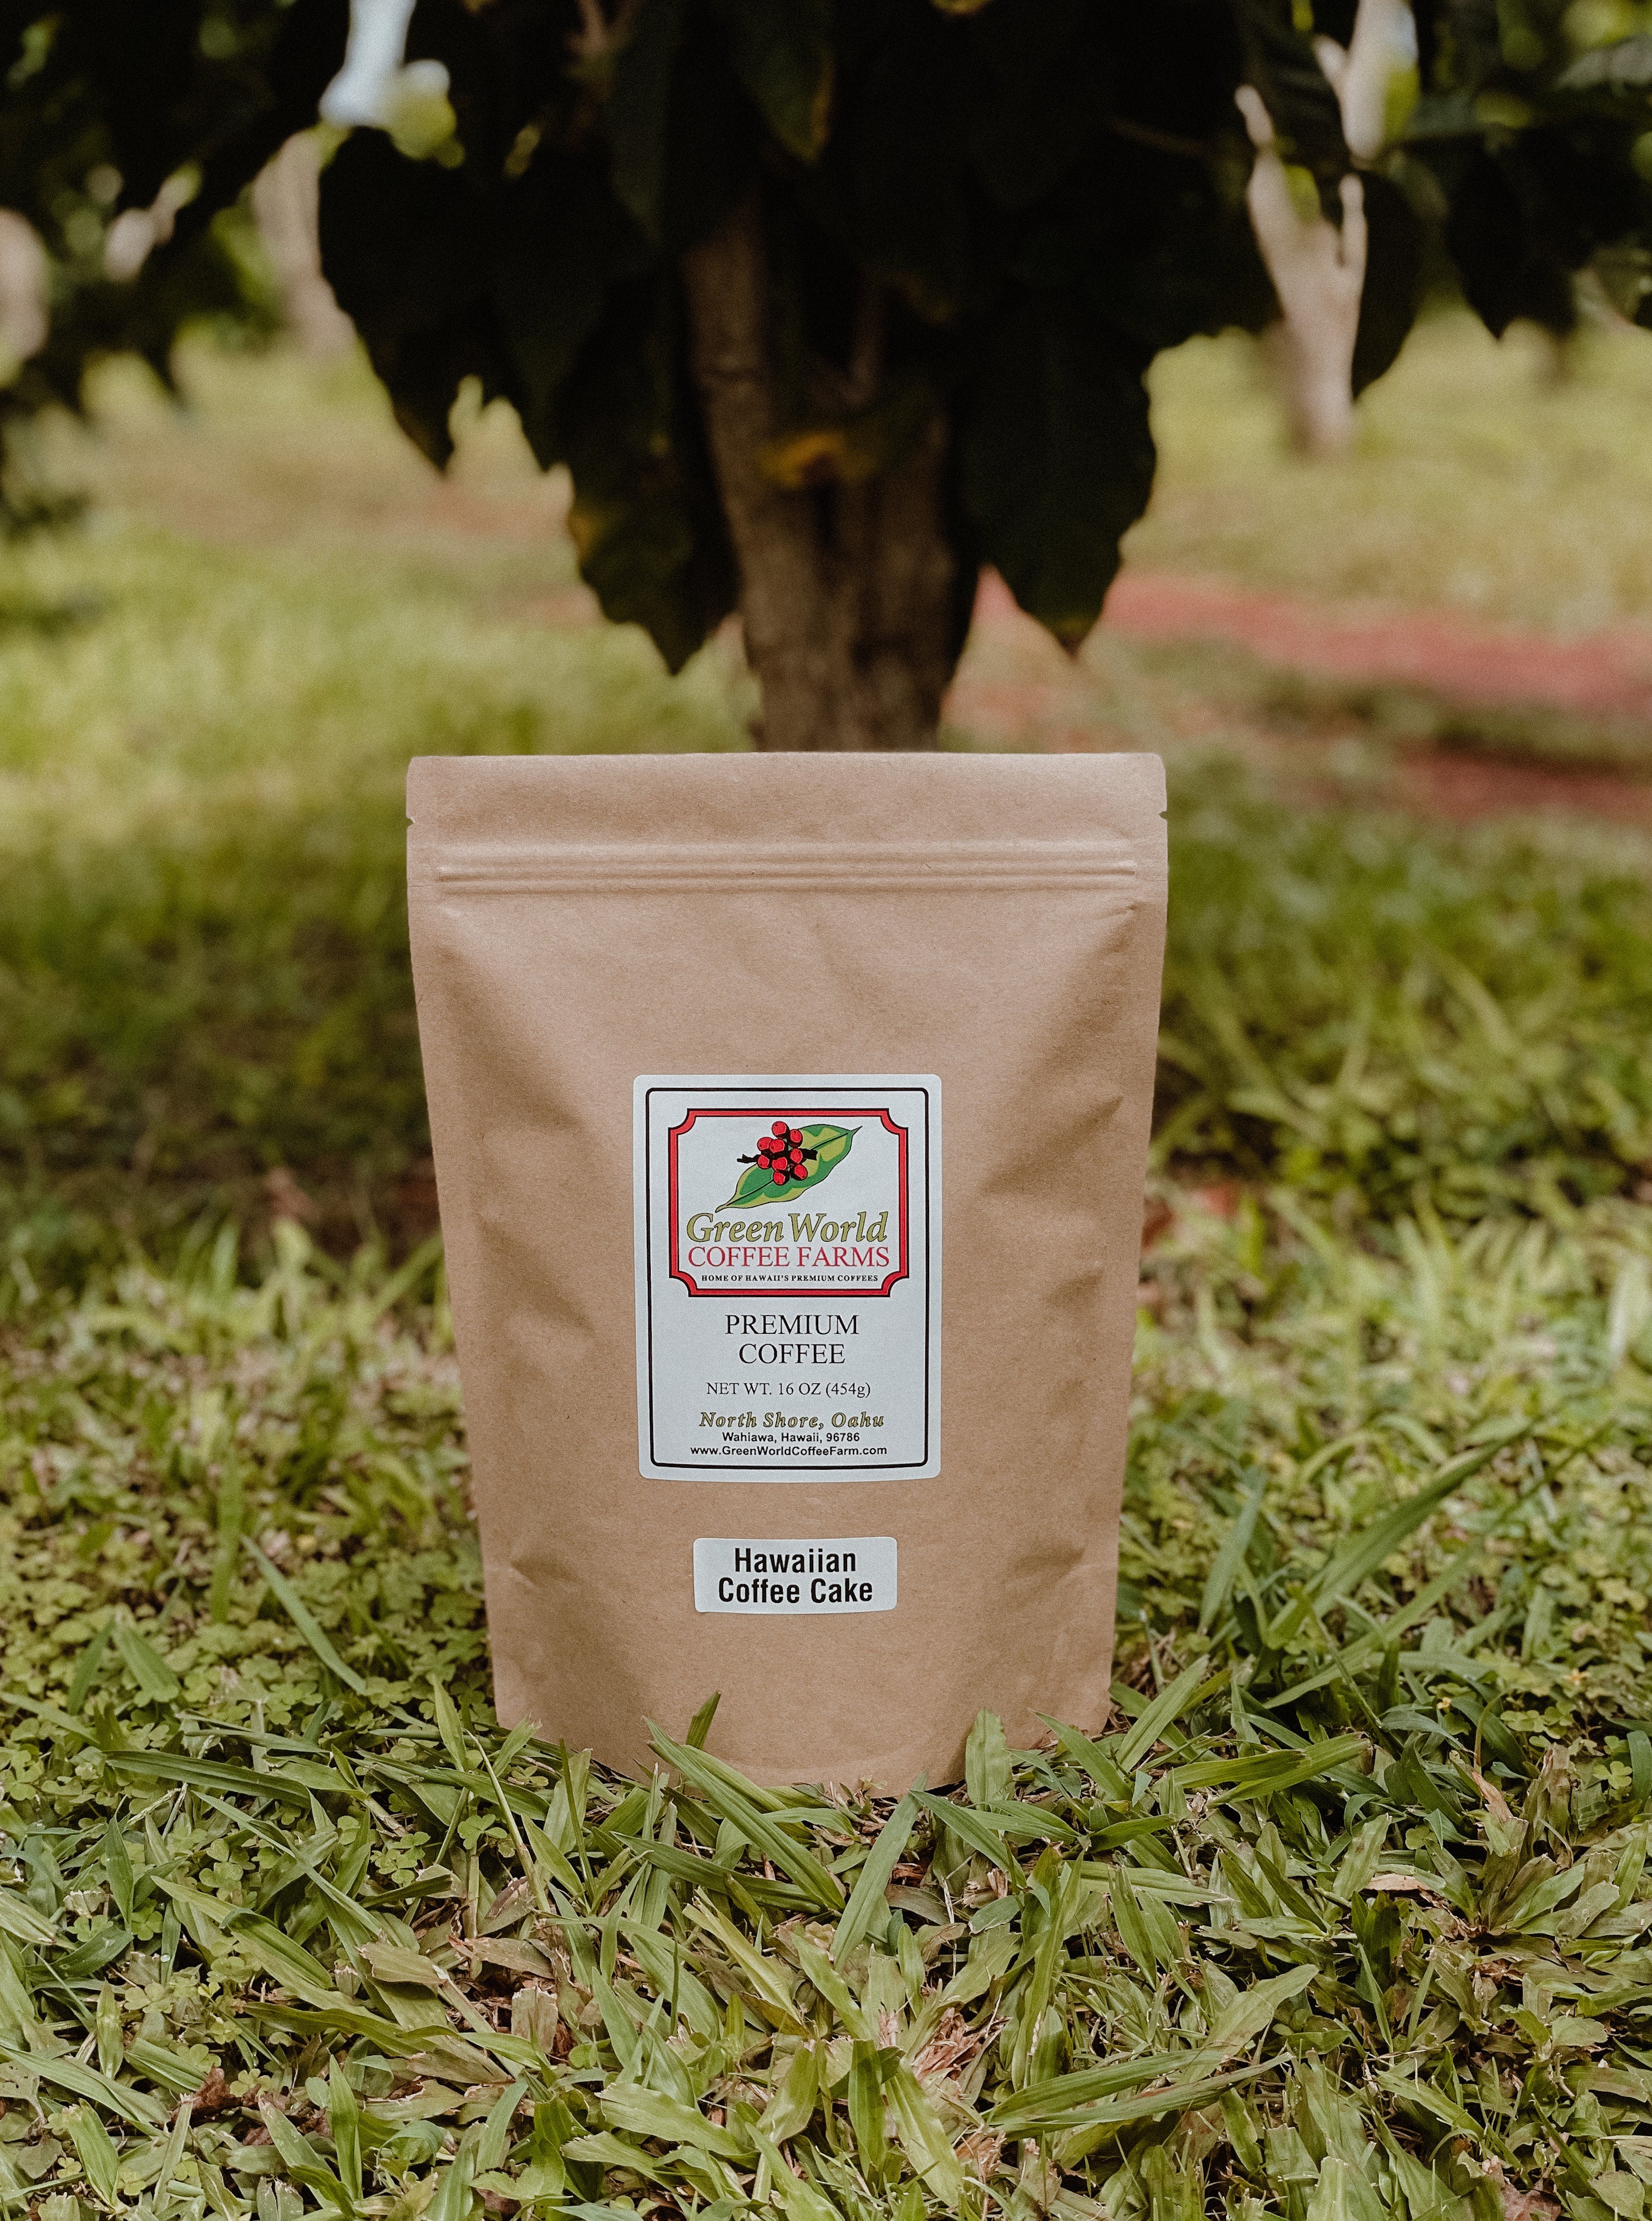 Pastel Caffeine Molecule Mugs – Green World Coffee Farm